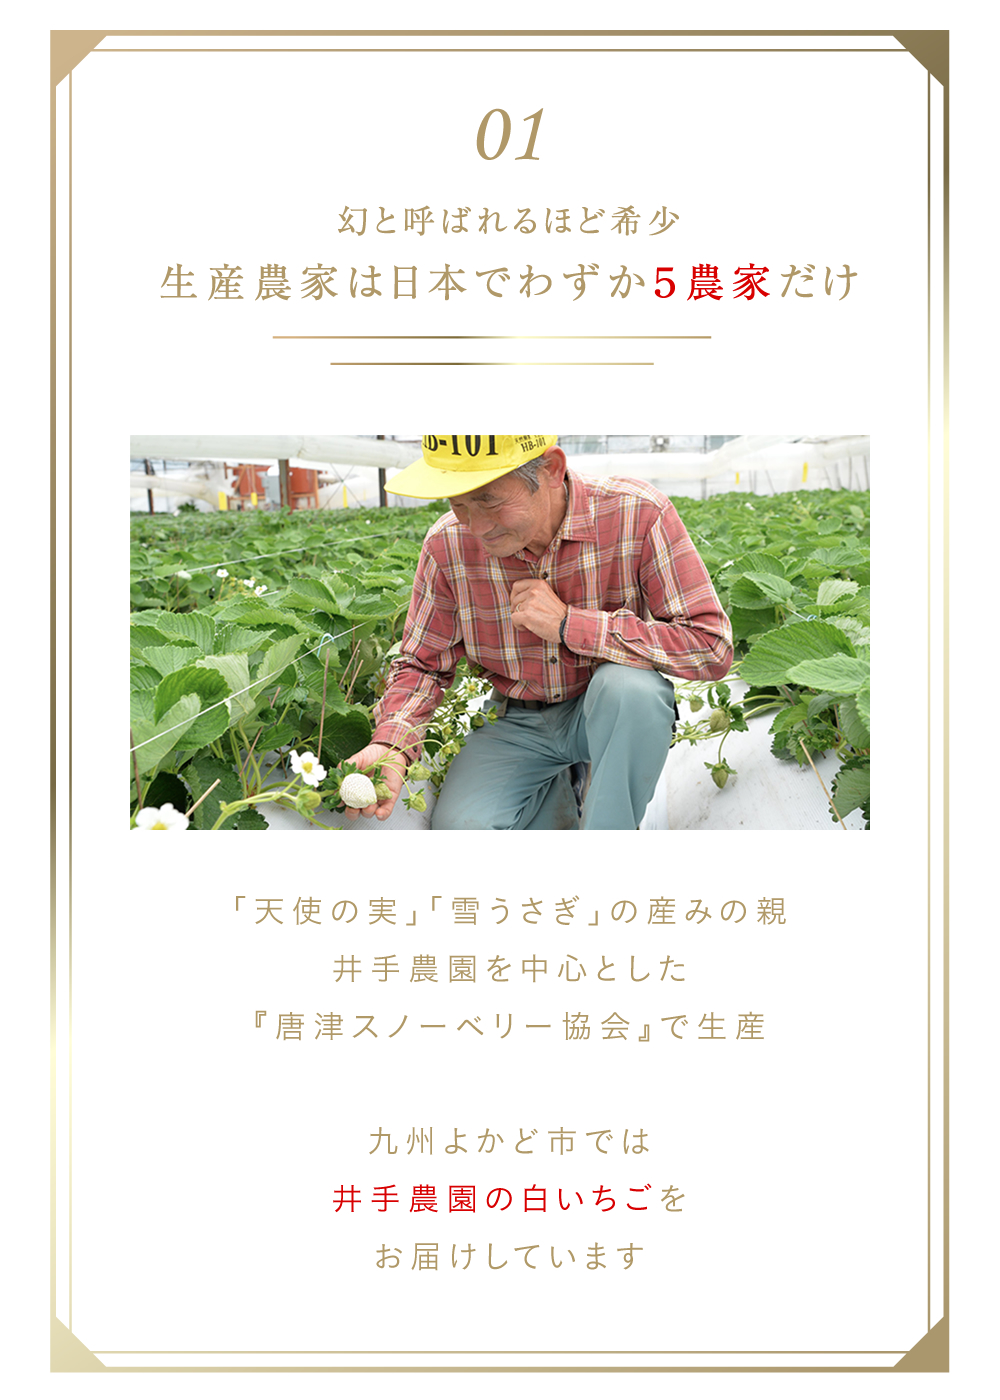 白いちご「天使の実」「雪うさぎ」の生産農家は日本でわずか５農家だけ